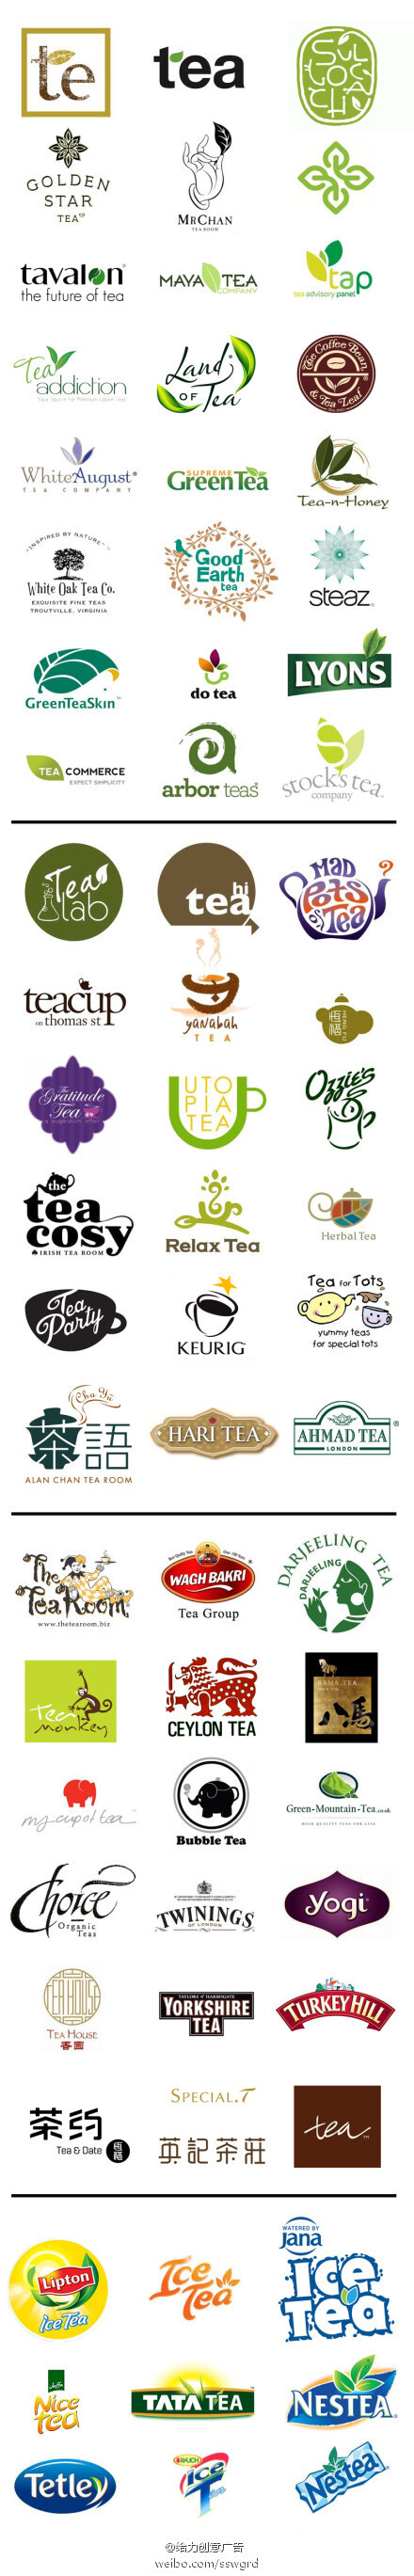 茶叶茶企茶饮料的品牌logo设计三大设计方向茶叶茶具与图形字体等